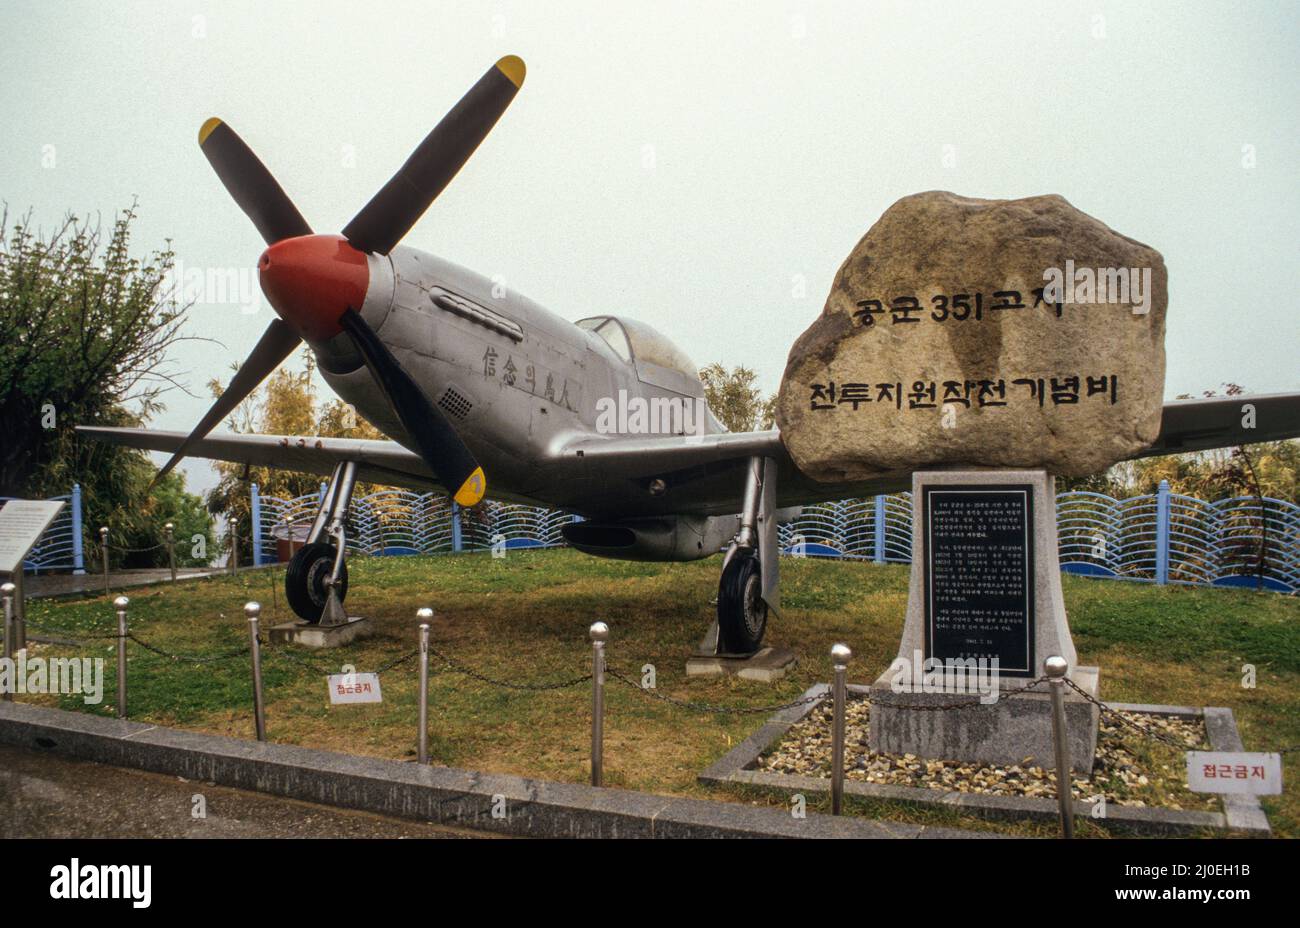 Ein P-51 Mustang Kampfflugzeug ausgestellt im Eujil Observatory, einem der vielen Museen entlang der DMZ Grenzlinie zwischen Nord- und Südkorea. - Un avión de combate P-51 Mustand en exhibición en el Observatorio de Eujil, uno de los muchos museos a lo largo de la zona fronteriza DMZ entre Corea del Norte y Corea del Sur. Foto de stock